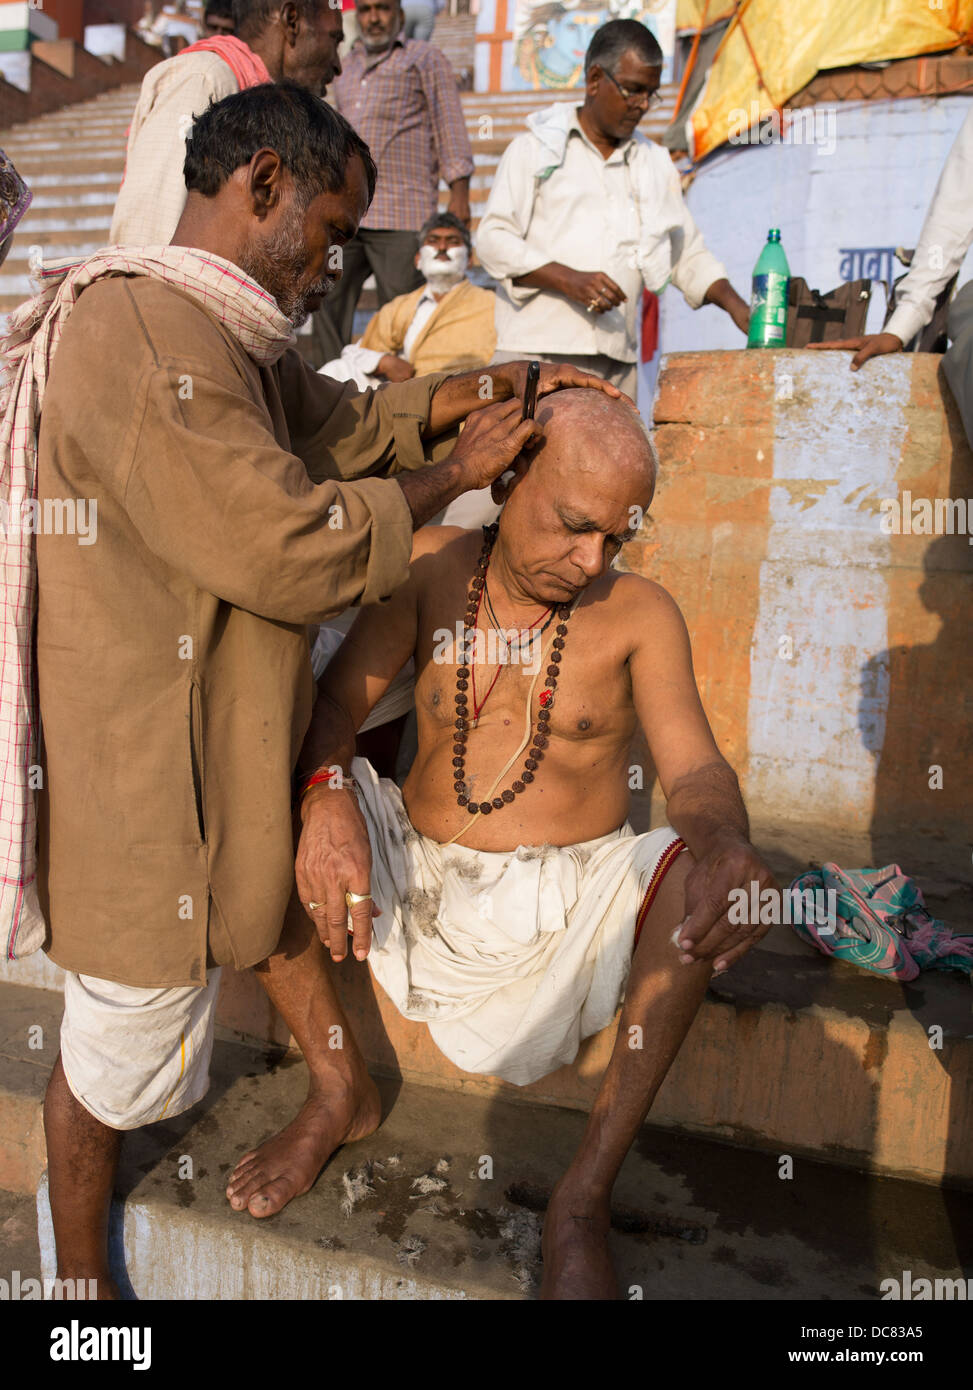 Afeitado matutino. Corte de pelo. La vida en las orillas del río Ganges - Varanasi, India Foto de stock